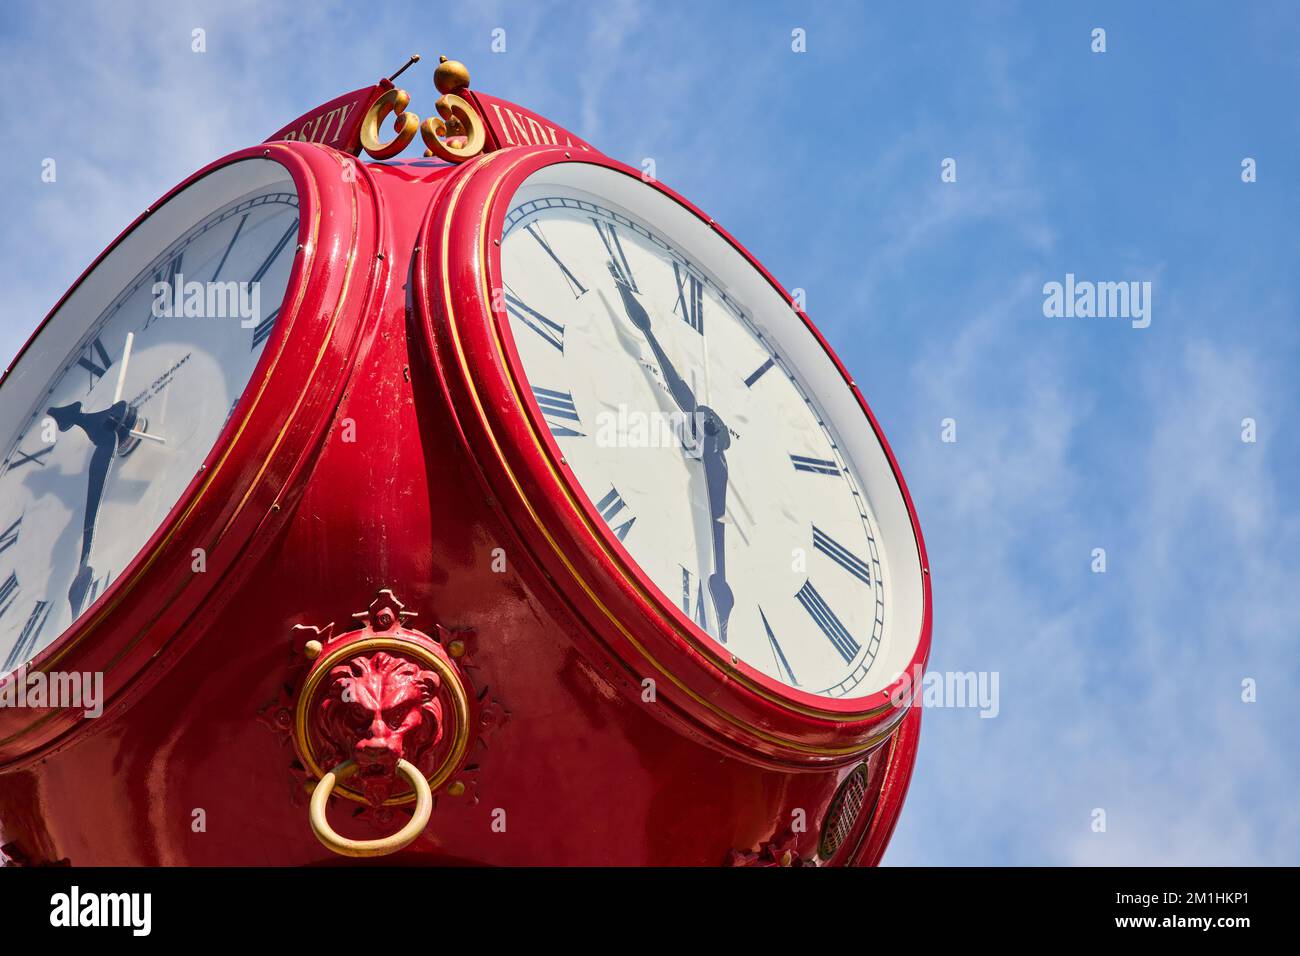 Détail de l'horloge rouge avec ciel bleu à l'université Bloomington Indiana Banque D'Images